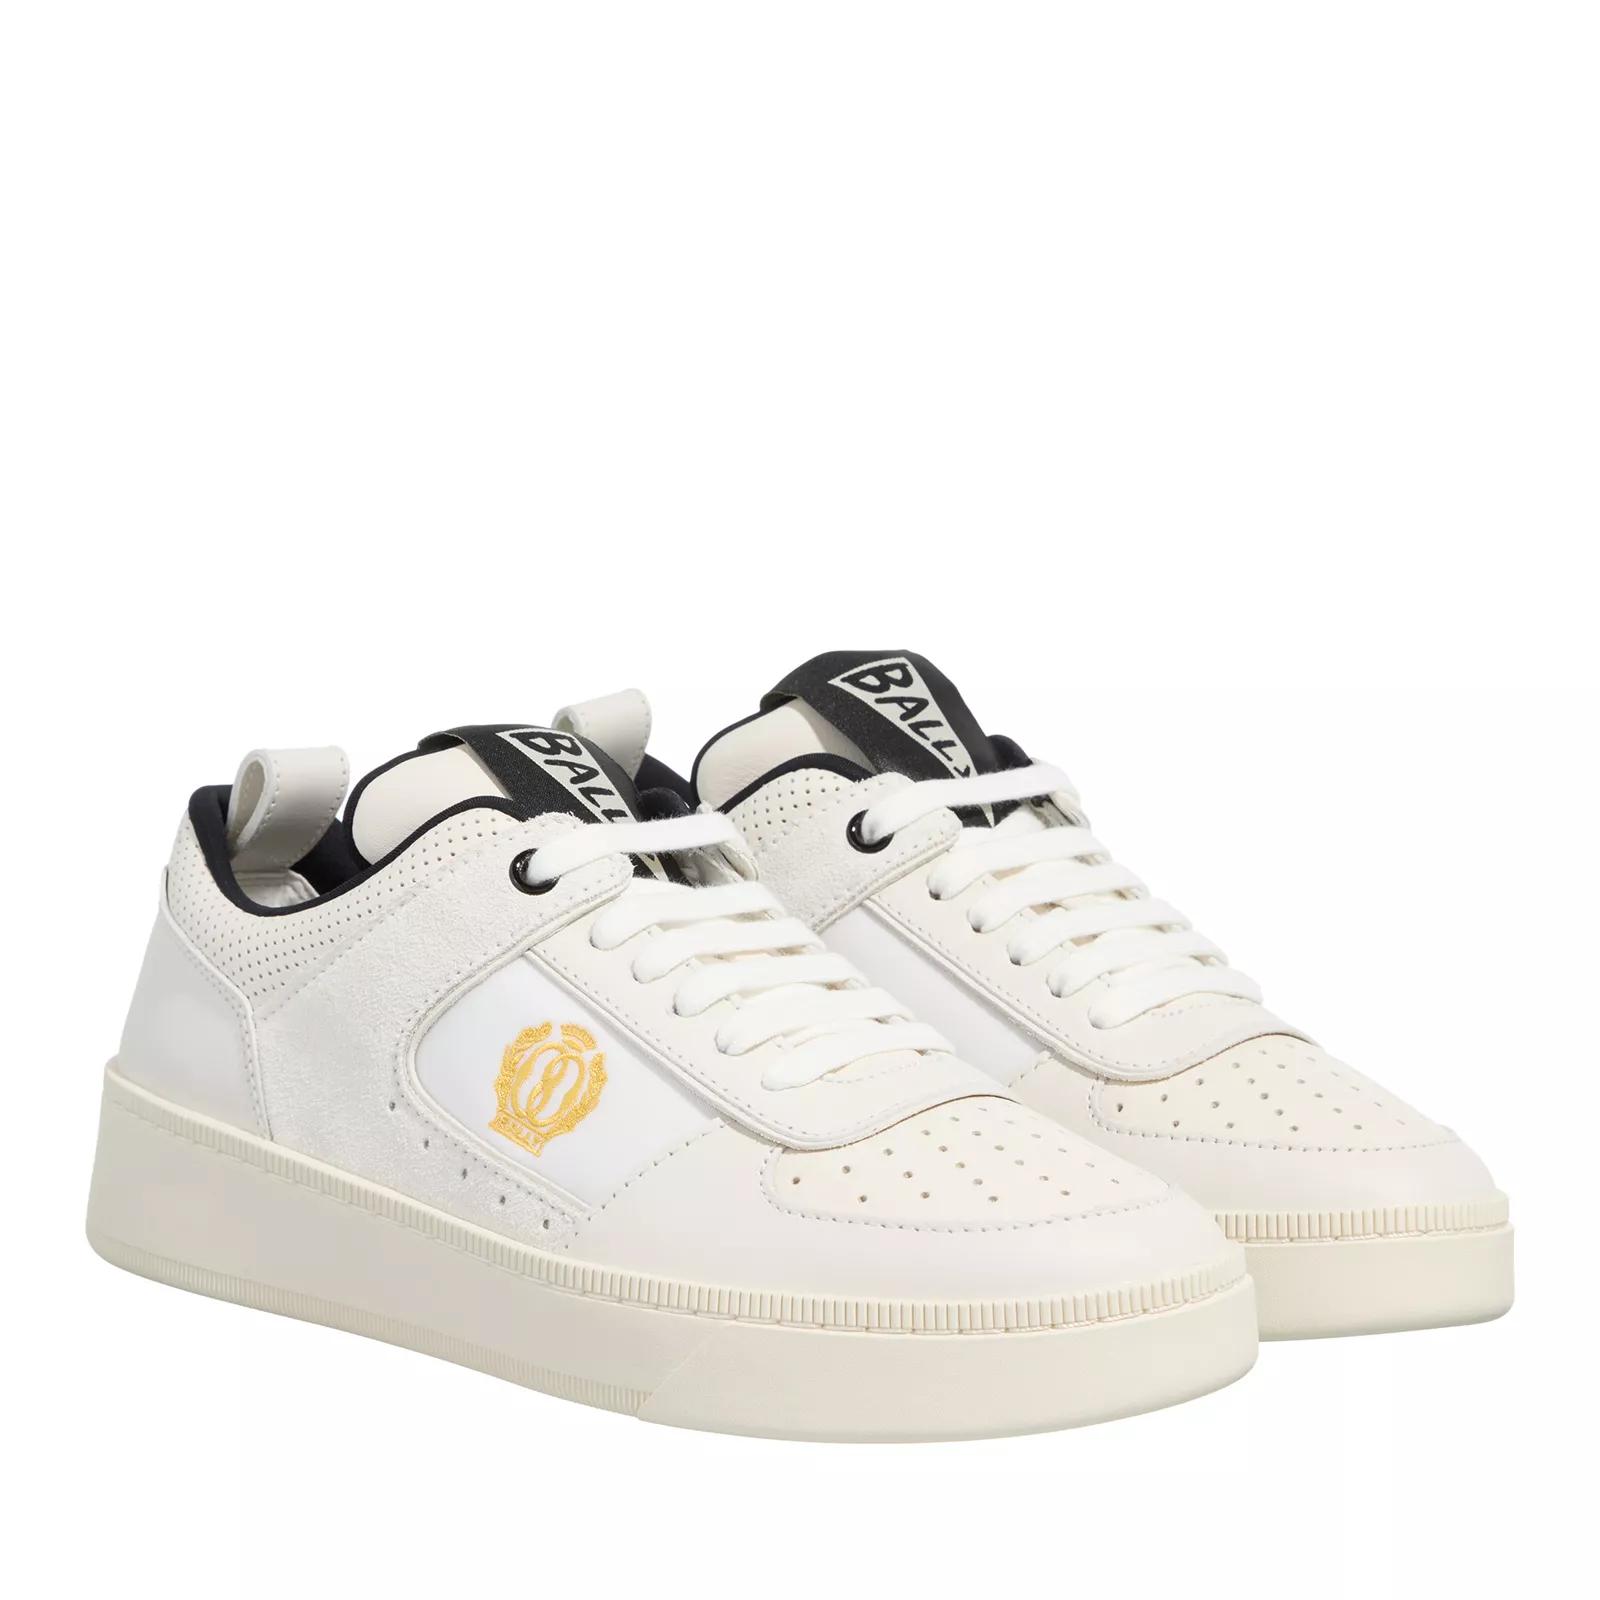 Bally Sneakers - Riweira Fo - Gr. 36 (EU) - in Weiß - für Damen von Bally